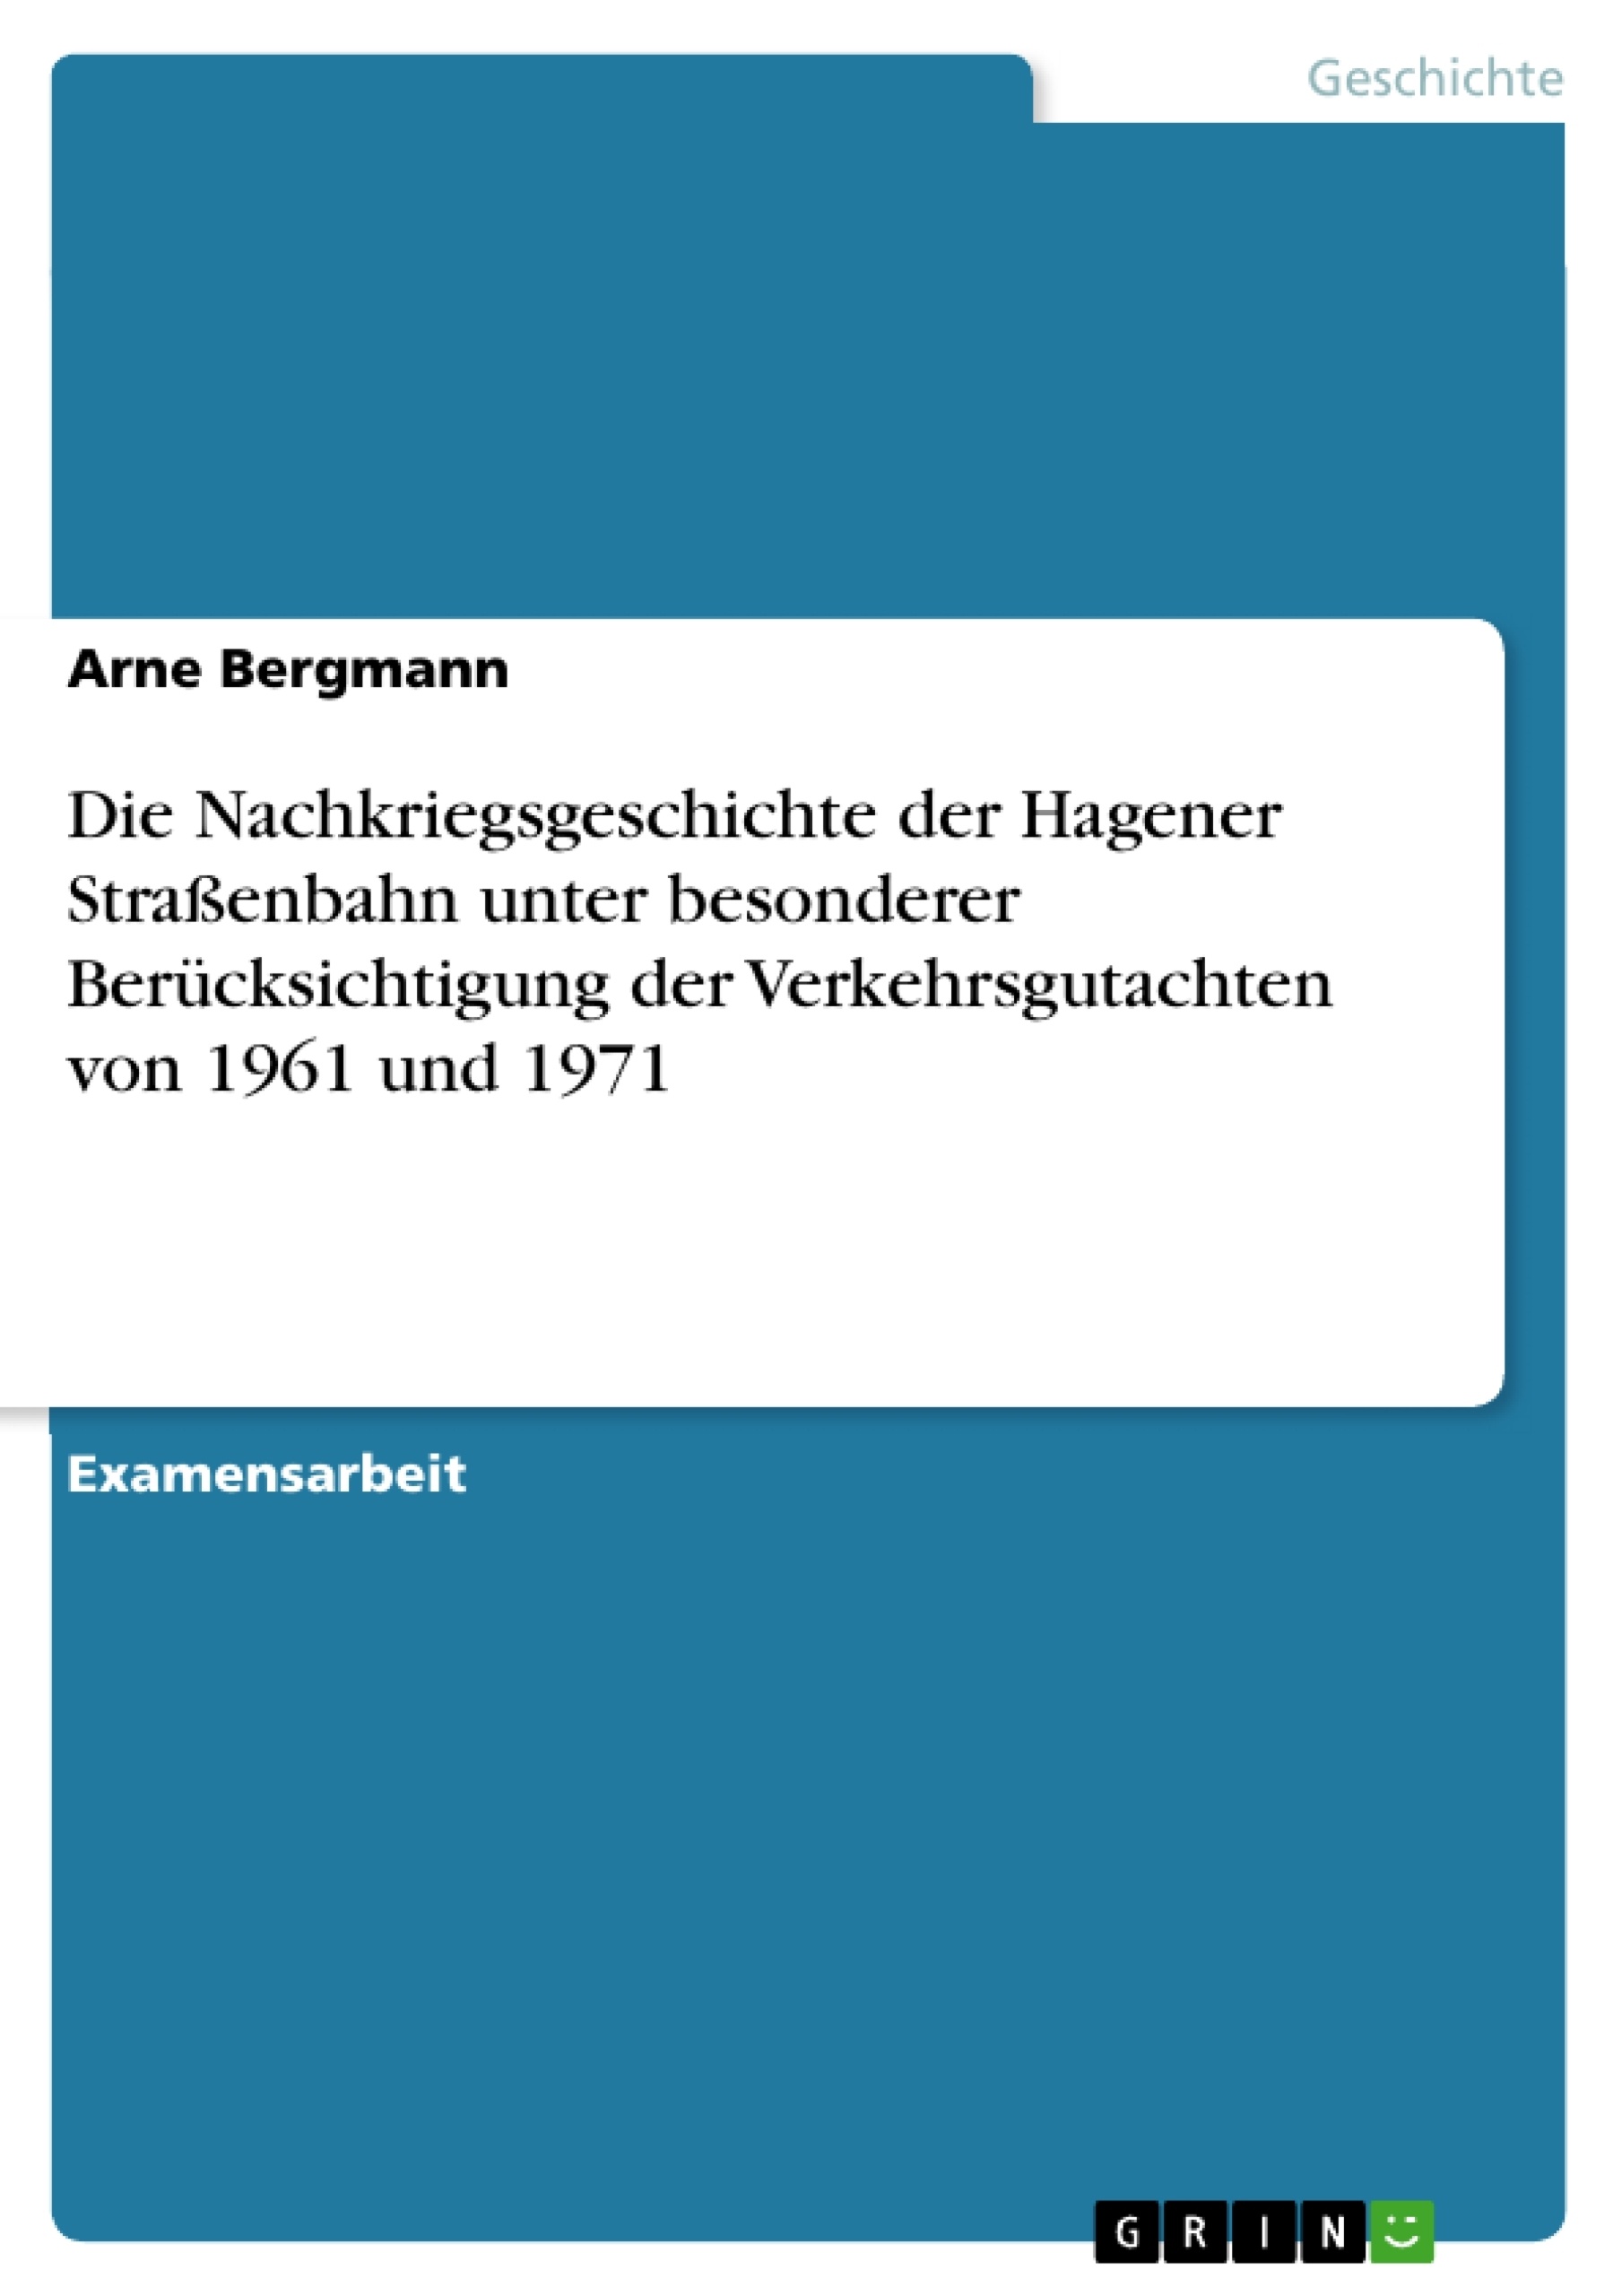 Titre: Die Nachkriegsgeschichte der Hagener Straßenbahn unter besonderer Berücksichtigung der Verkehrsgutachten von 1961 und 1971